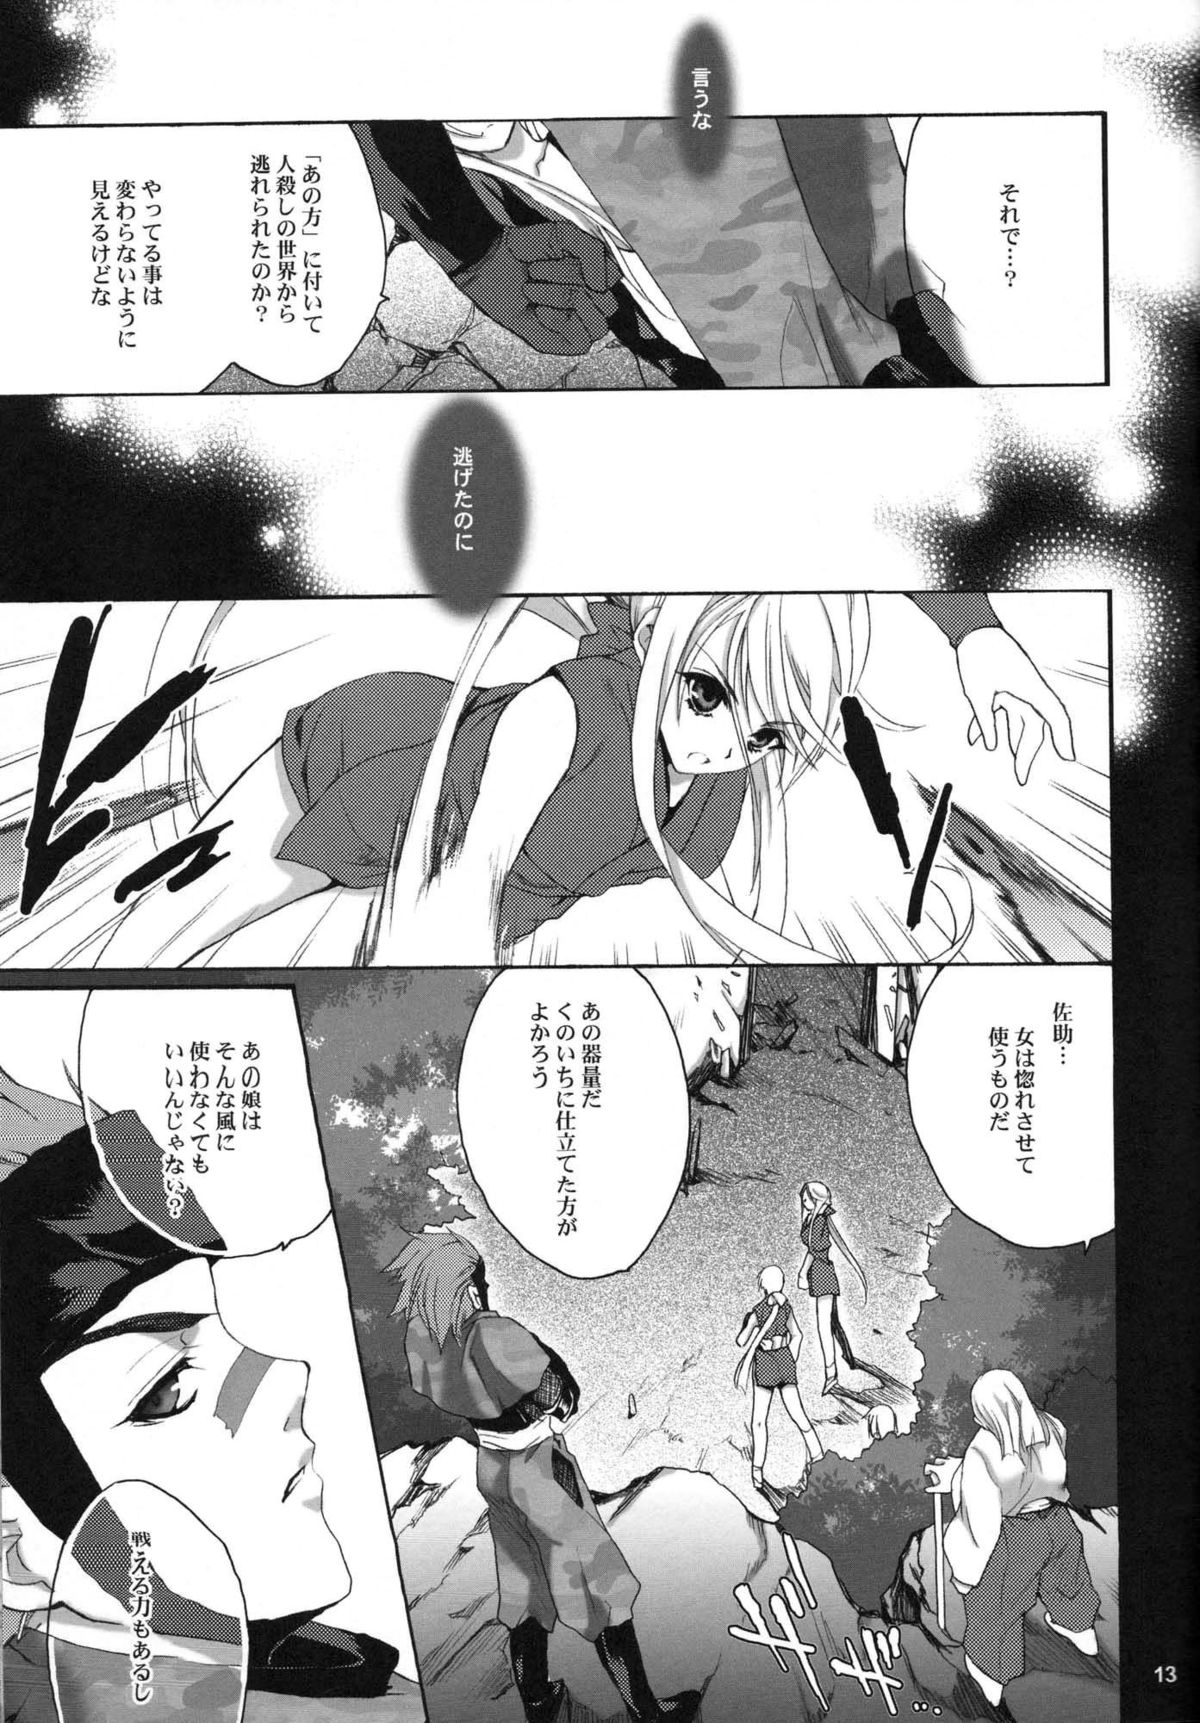 (Comic Characters! 02) [Hanzai Tengoku (Hasei Agana)] SyuU-U (Sengoku Basara) (コミックキャラクターズ! 02) [犯罪天国 (ハセイアガナ)] 驟雨 (戦国BASARA)